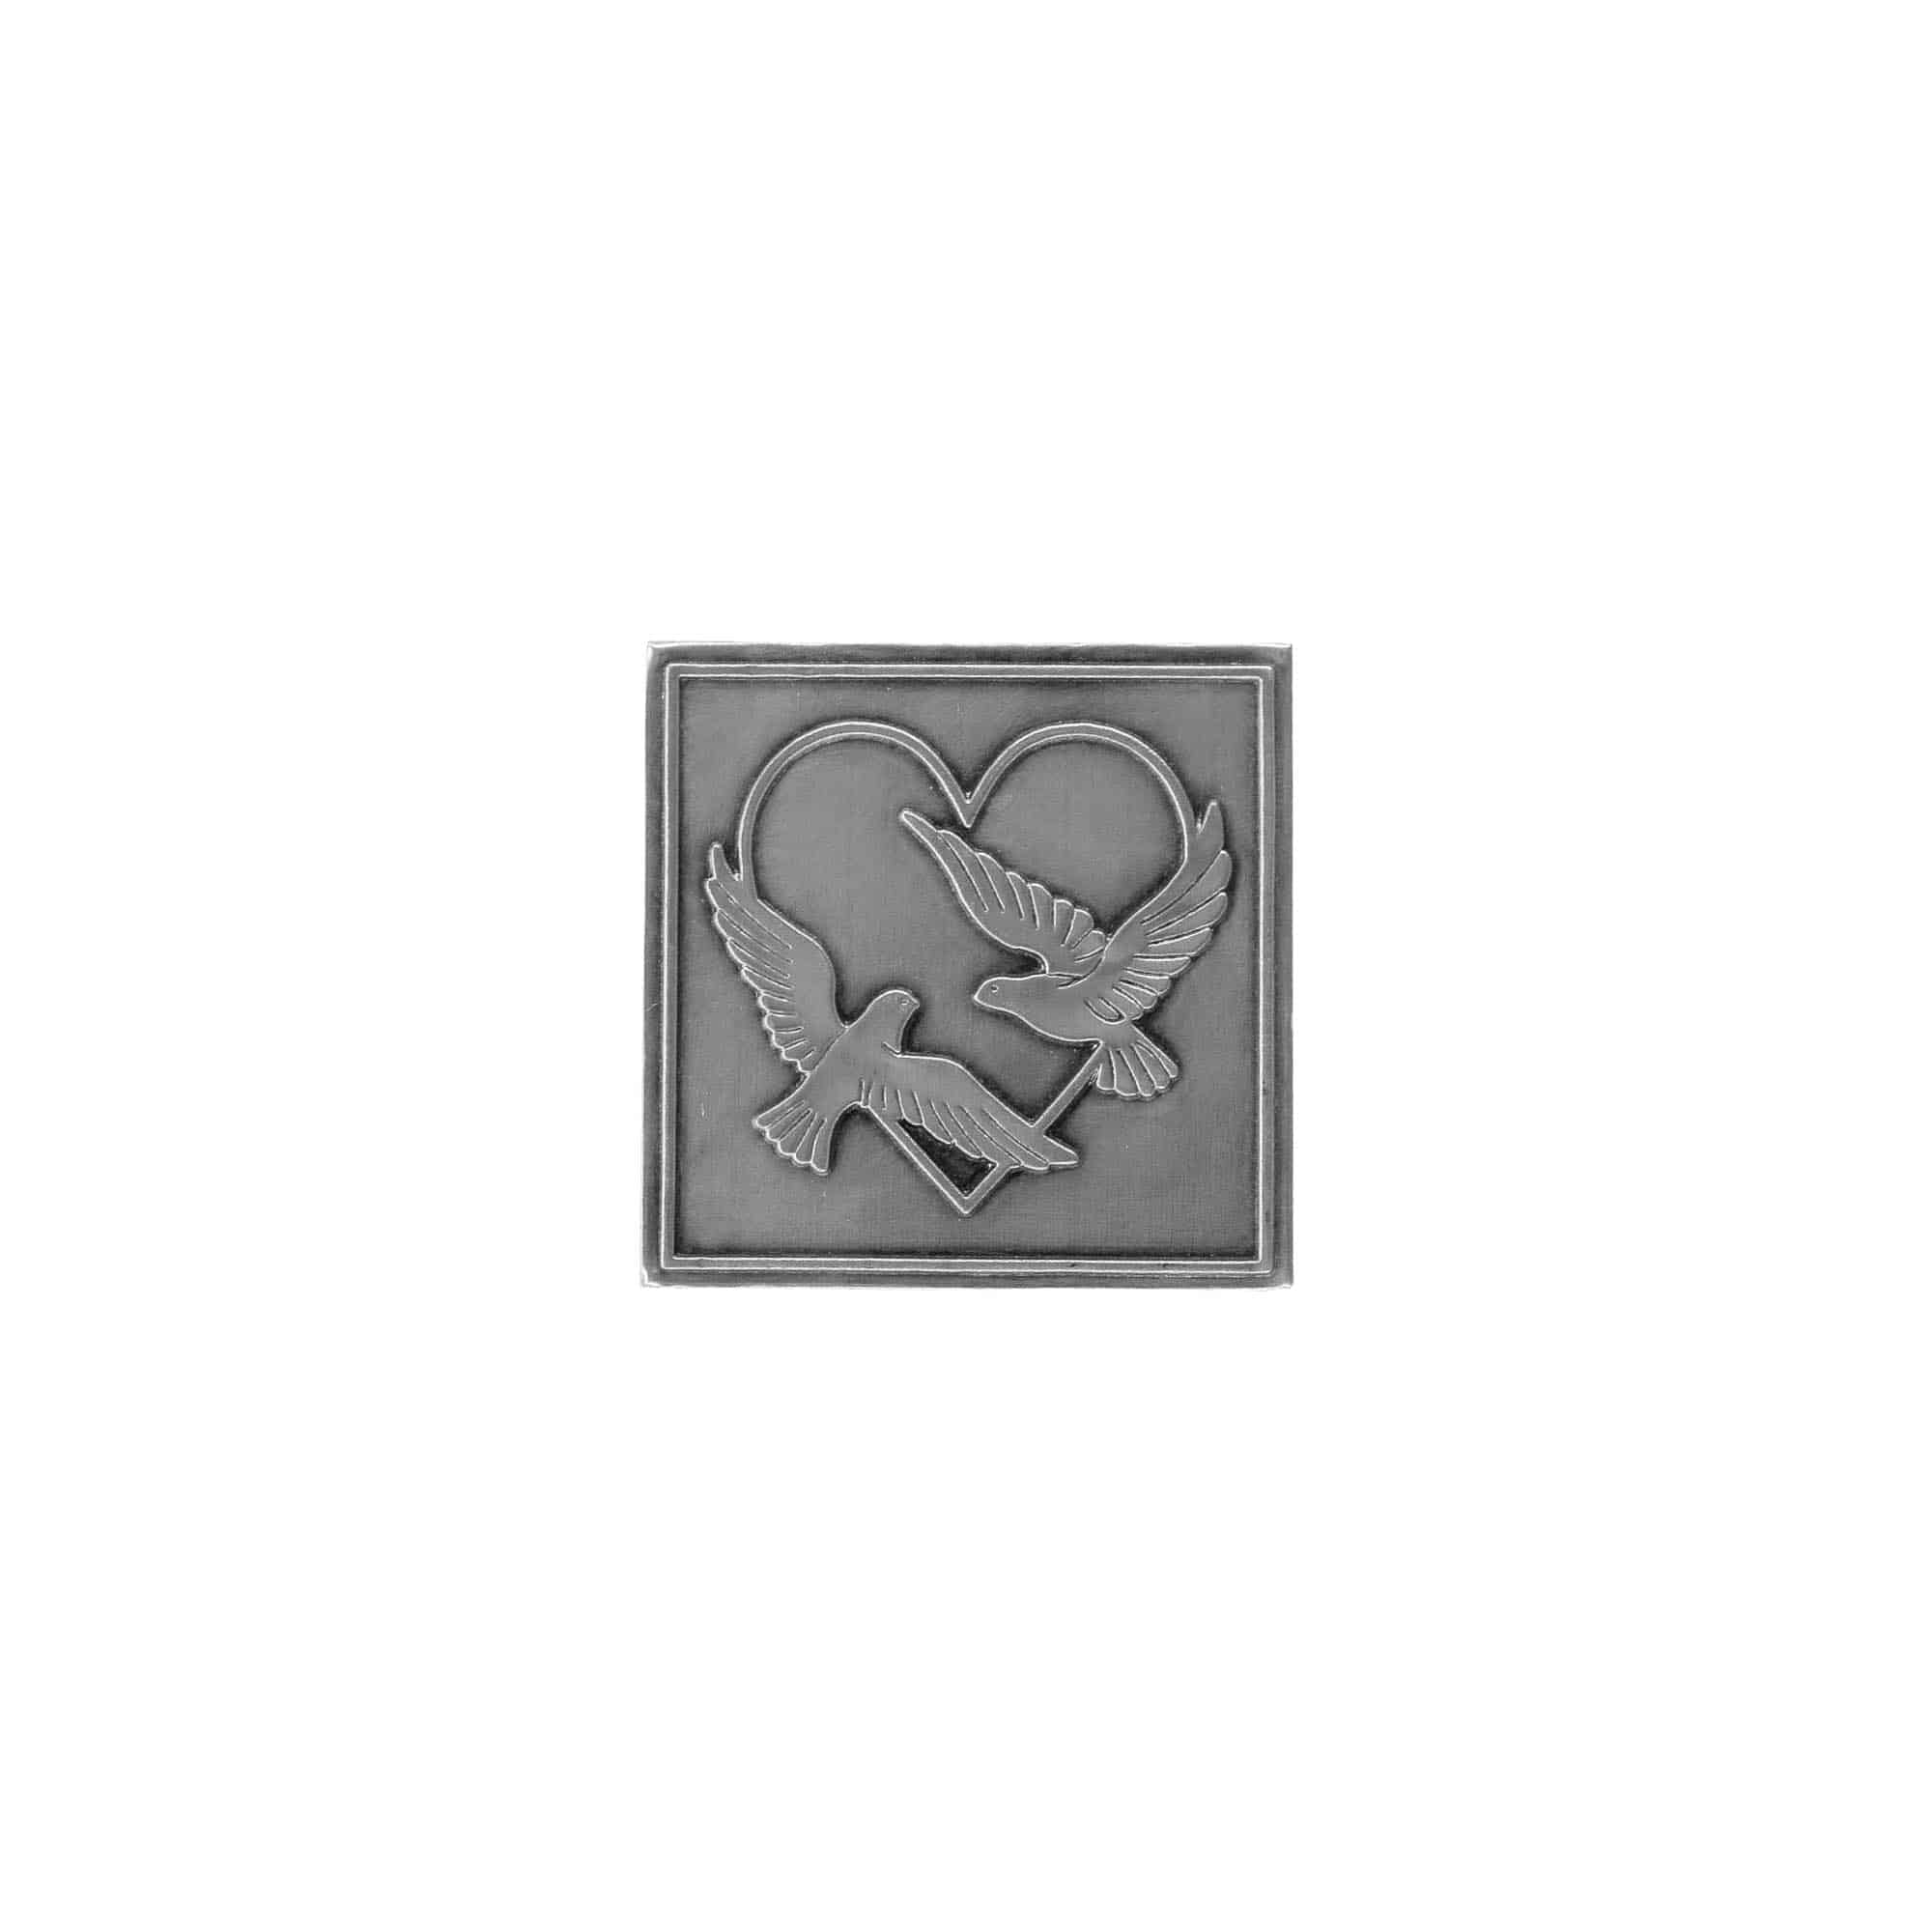 Etykieta cynowa 'Gołąbki ślubne', kwadratowa, metal, kolor srebrny